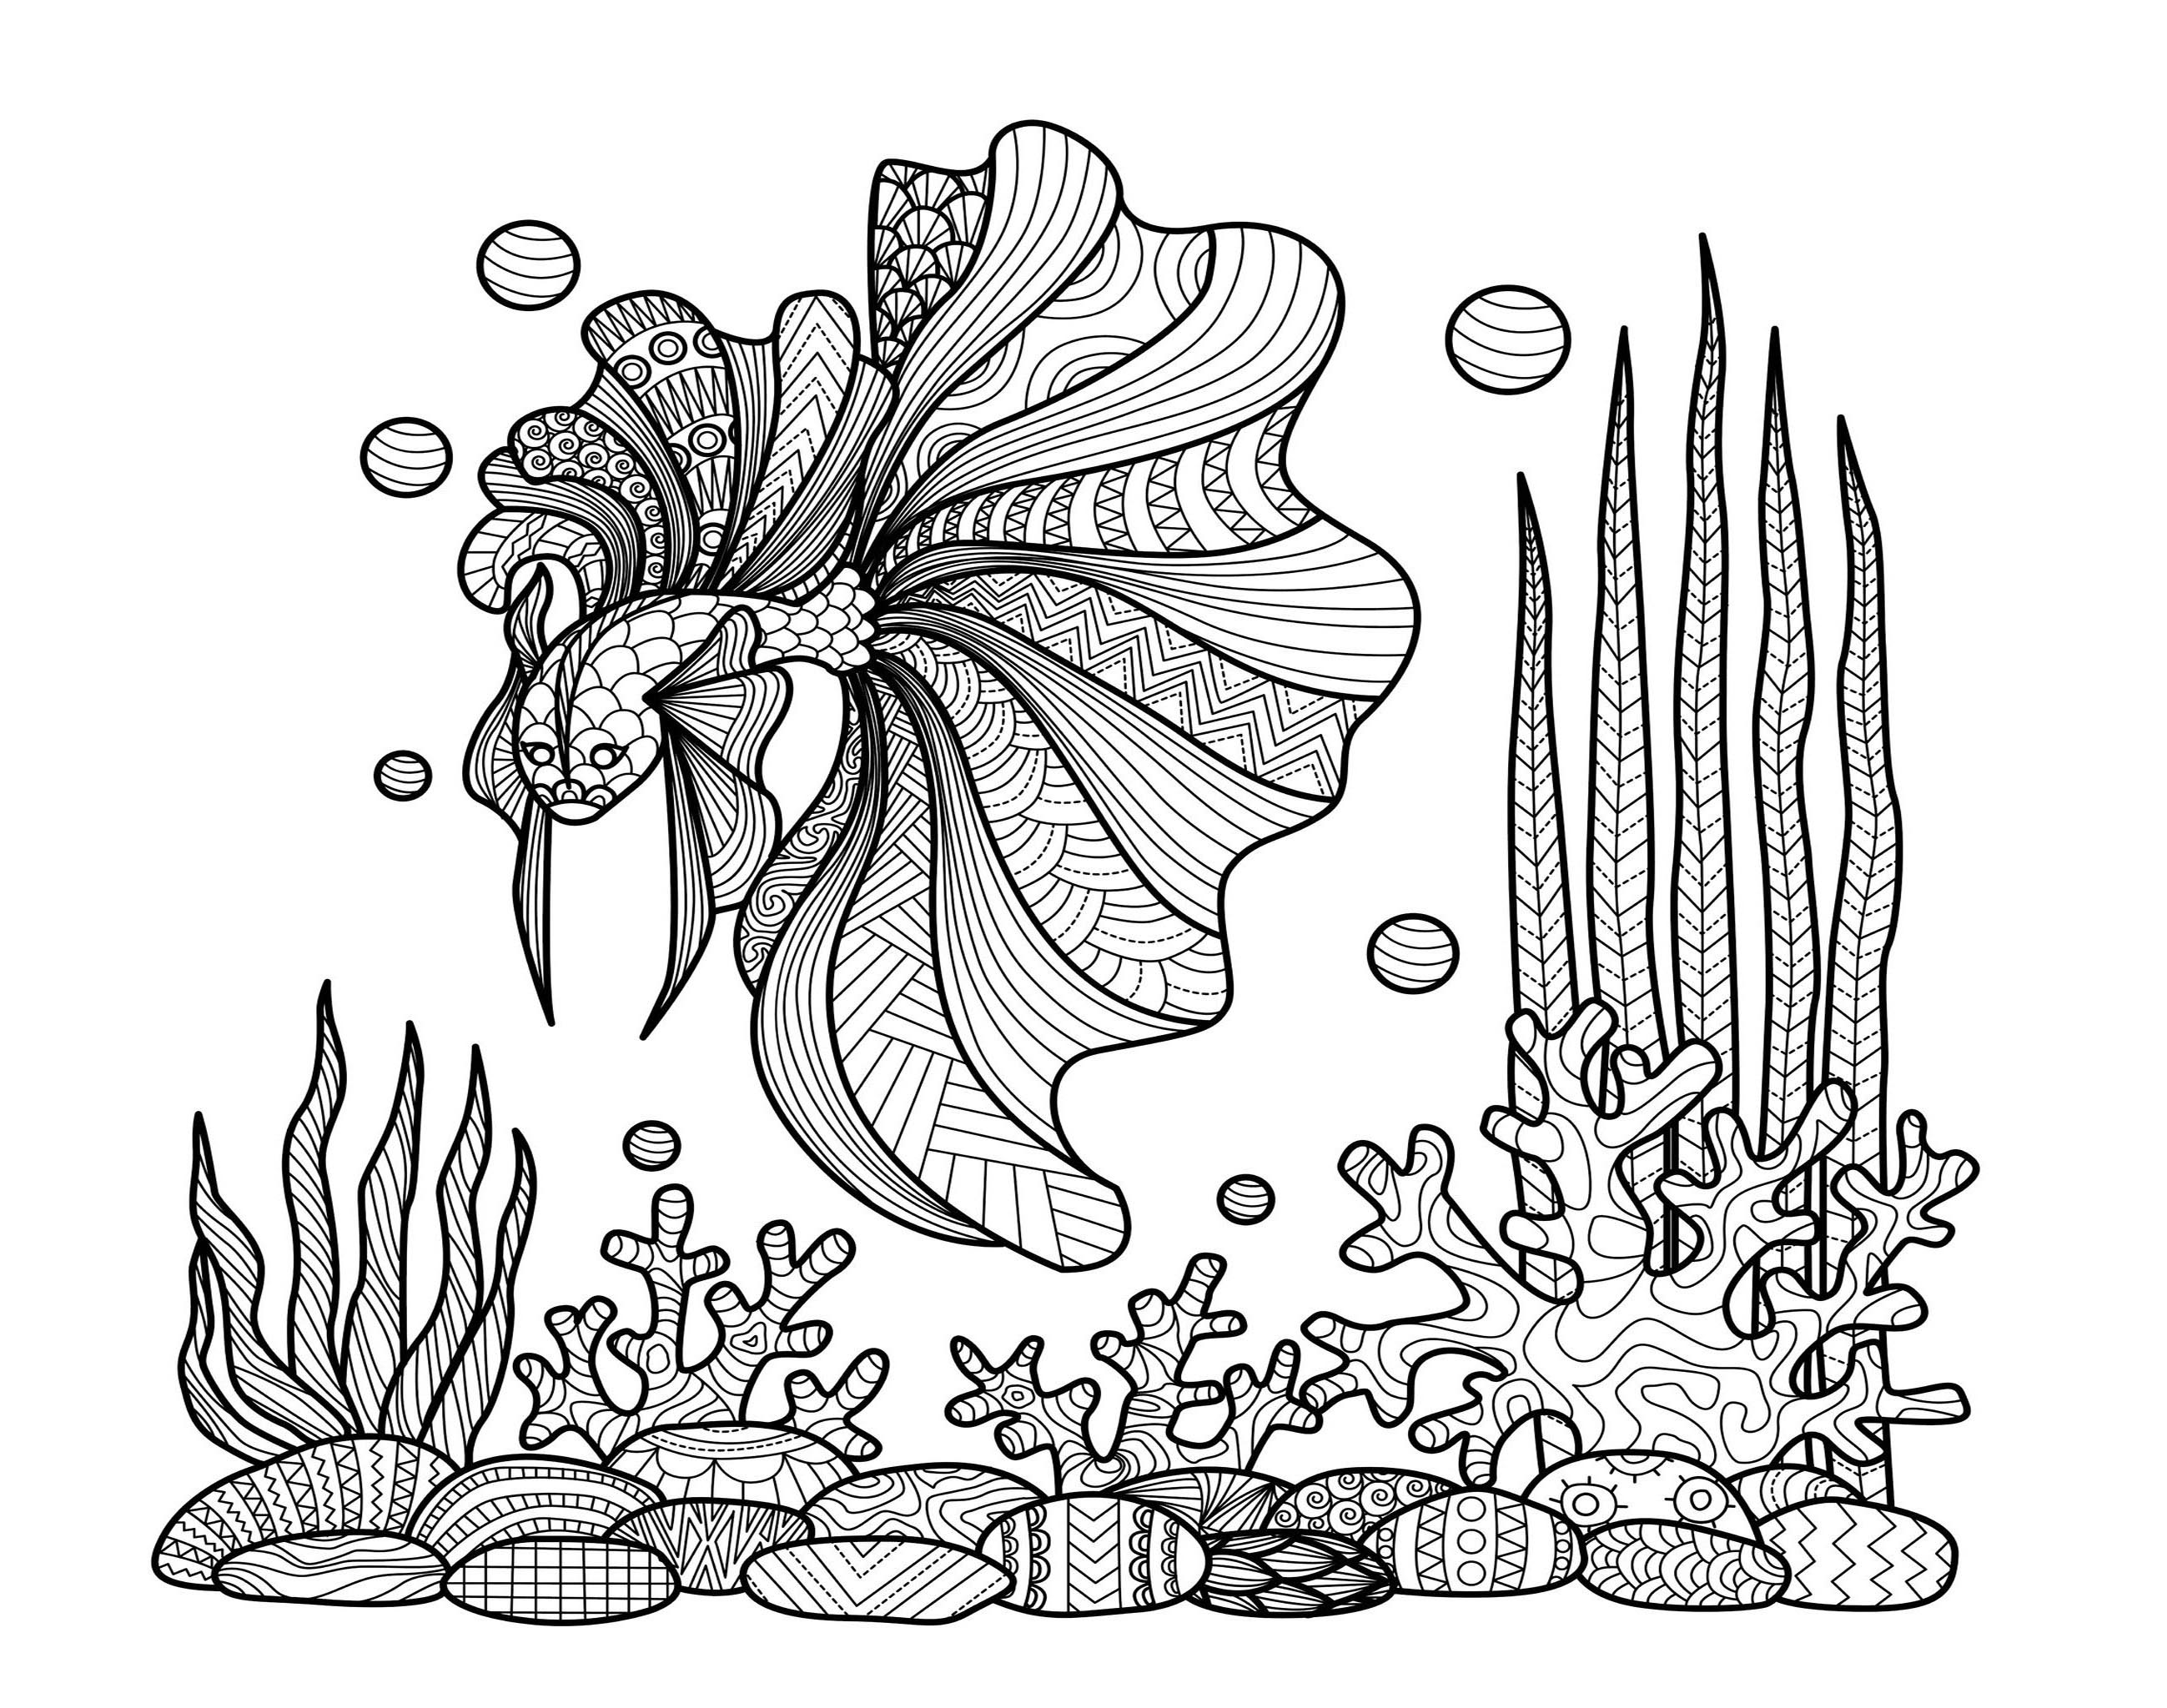 Poisson sur corails bimdeedee, Artiste : Bimdeedee   Source : 123rf